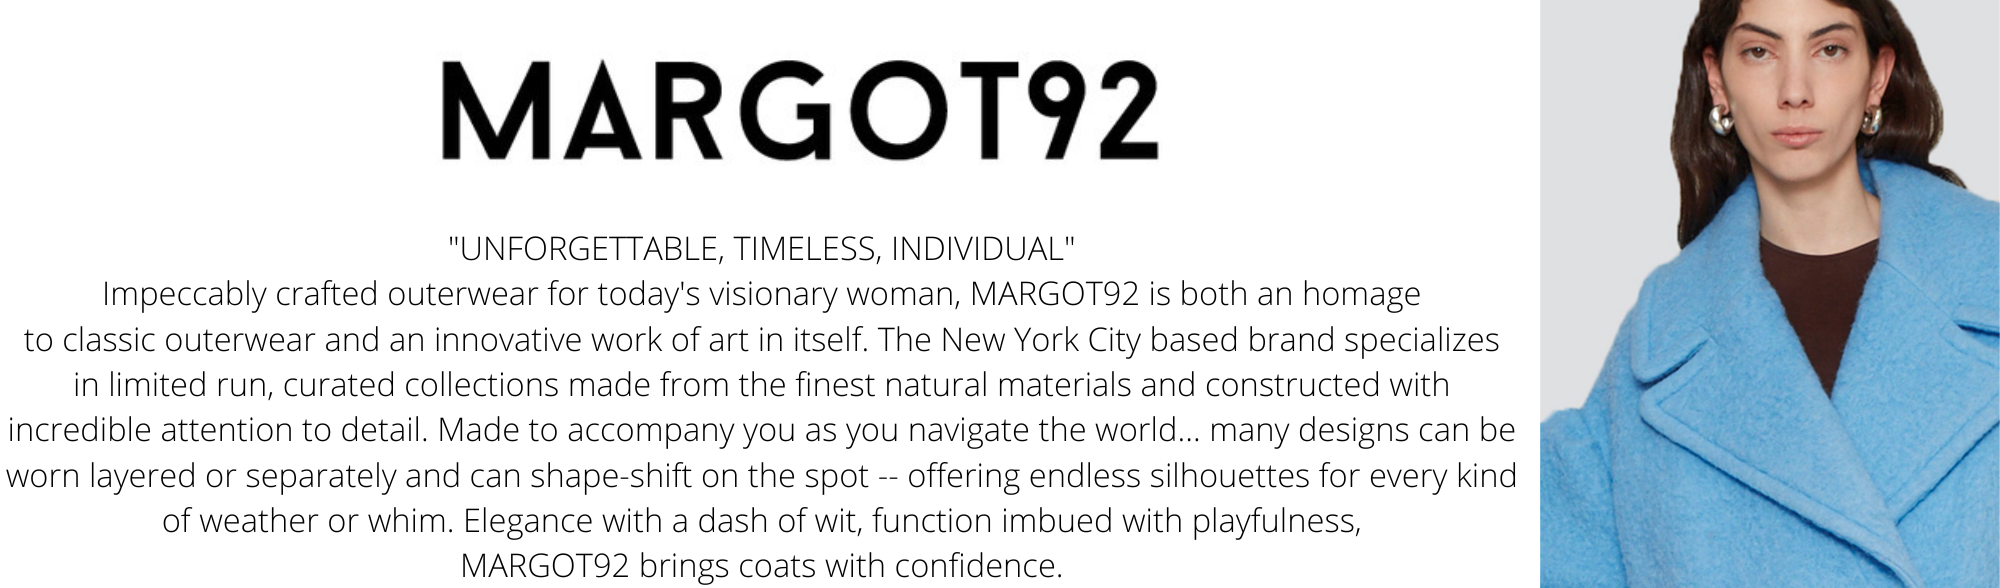 -margot-92-bio-blurb.png